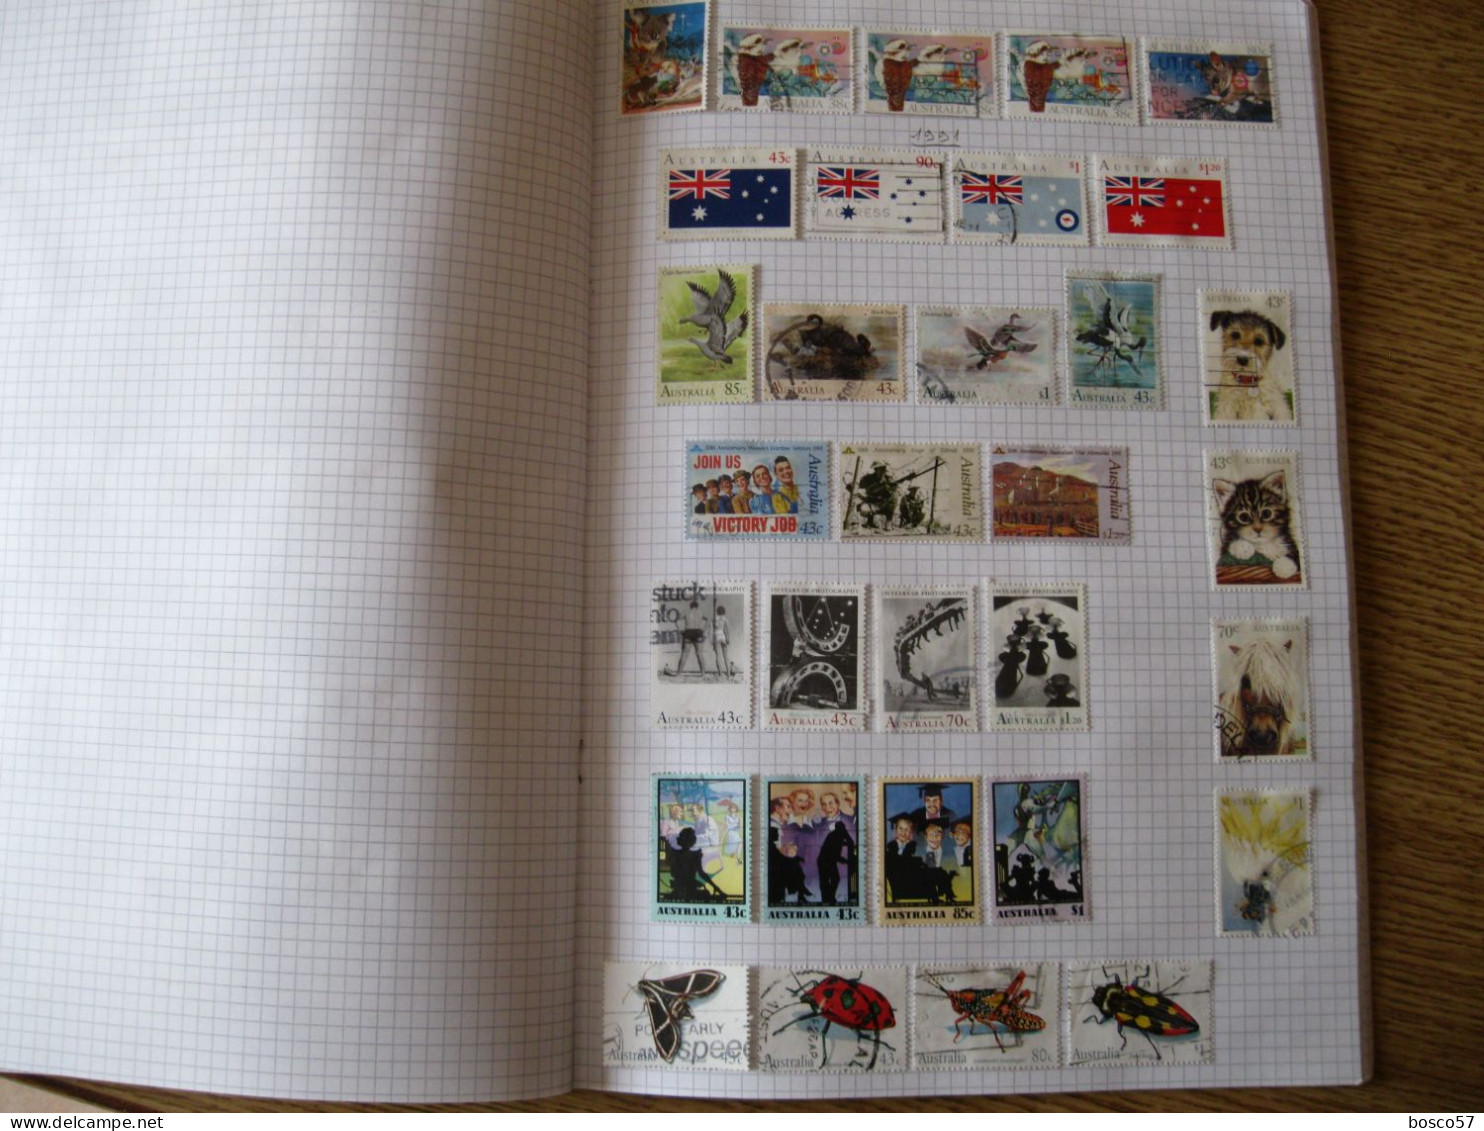 Collezione di francobolli di Australia in gran parte usata montata su album autocostruito.